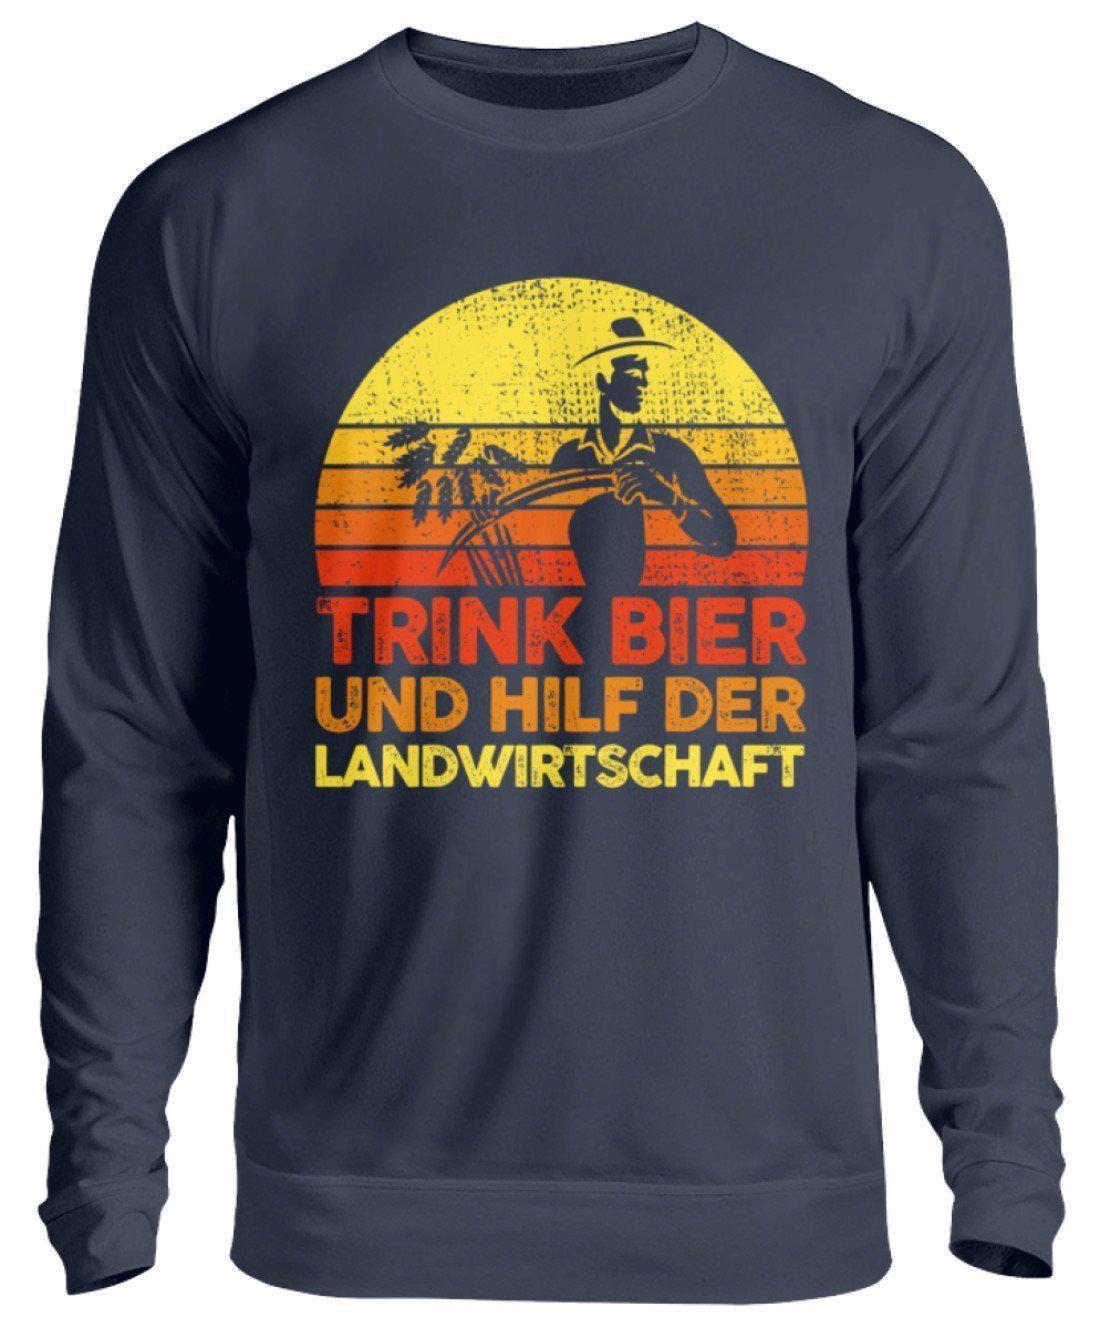 Trink Bier hilf Landwirtschaft Retro · Unisex Sweatshirt Pullover-Unisex Sweatshirt-Oxford Navy-S-Agrarstarz